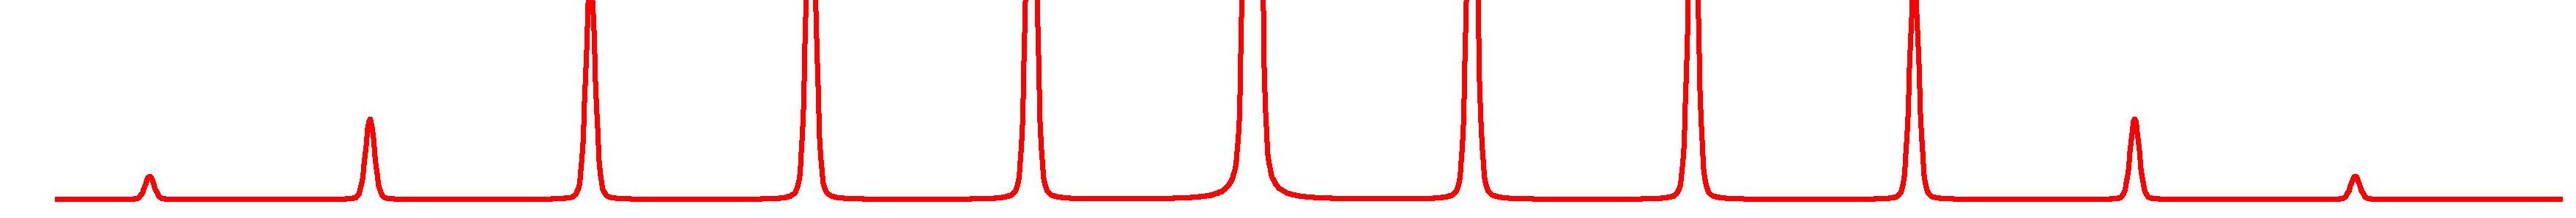 táblázat A nátrium-perjodát 3 Na MAS NMR szimulációjának paraméterei, valamint a szimulált és a mért spektrumok